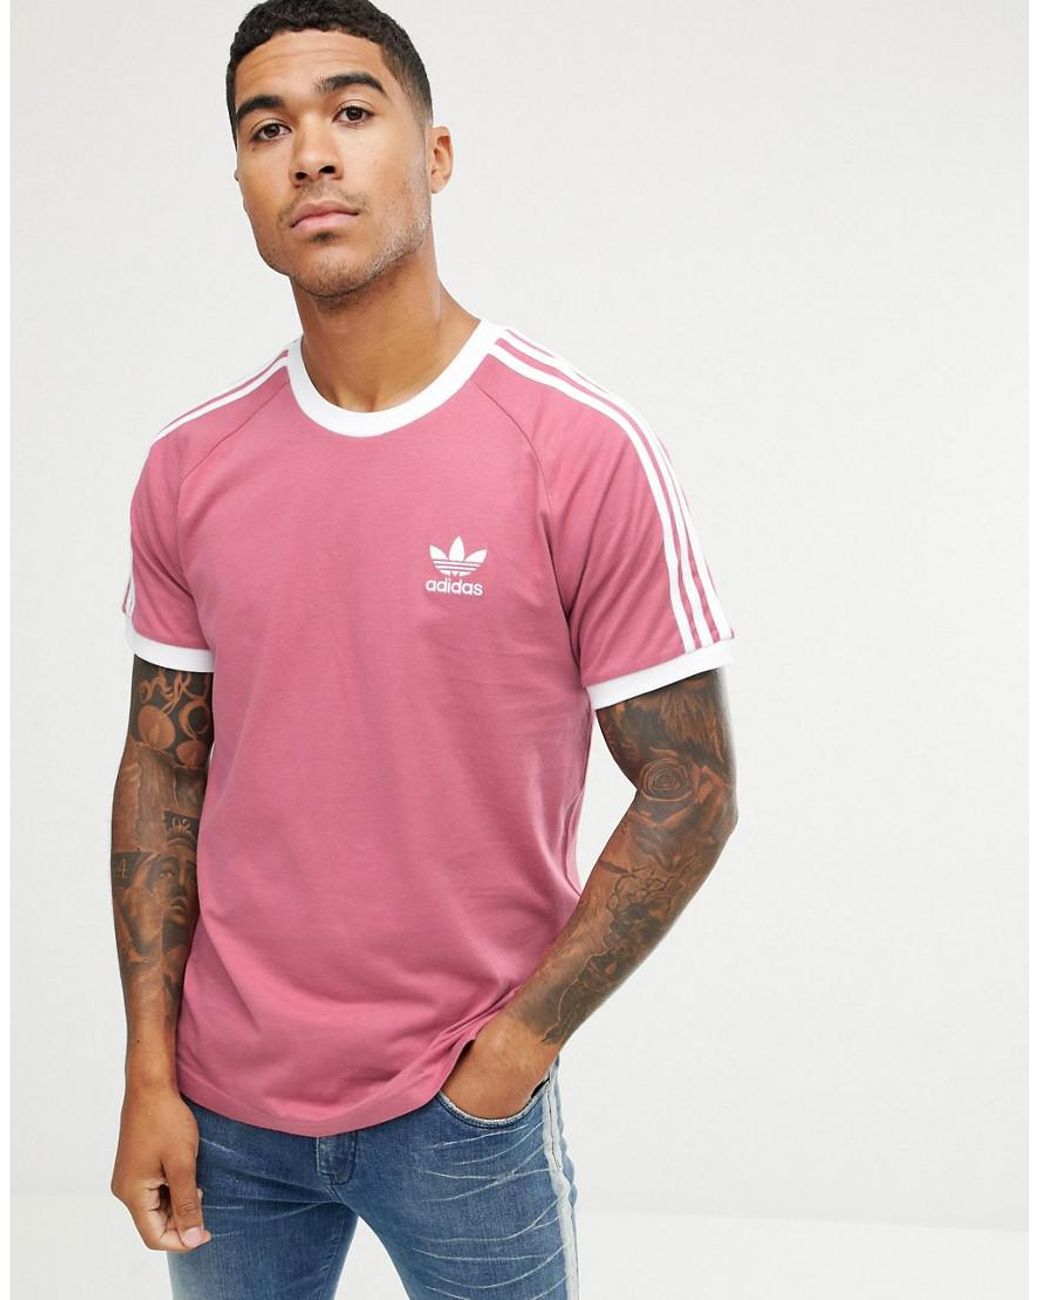 adidas Originals California T-shirt In Pink for Men | Lyst UK